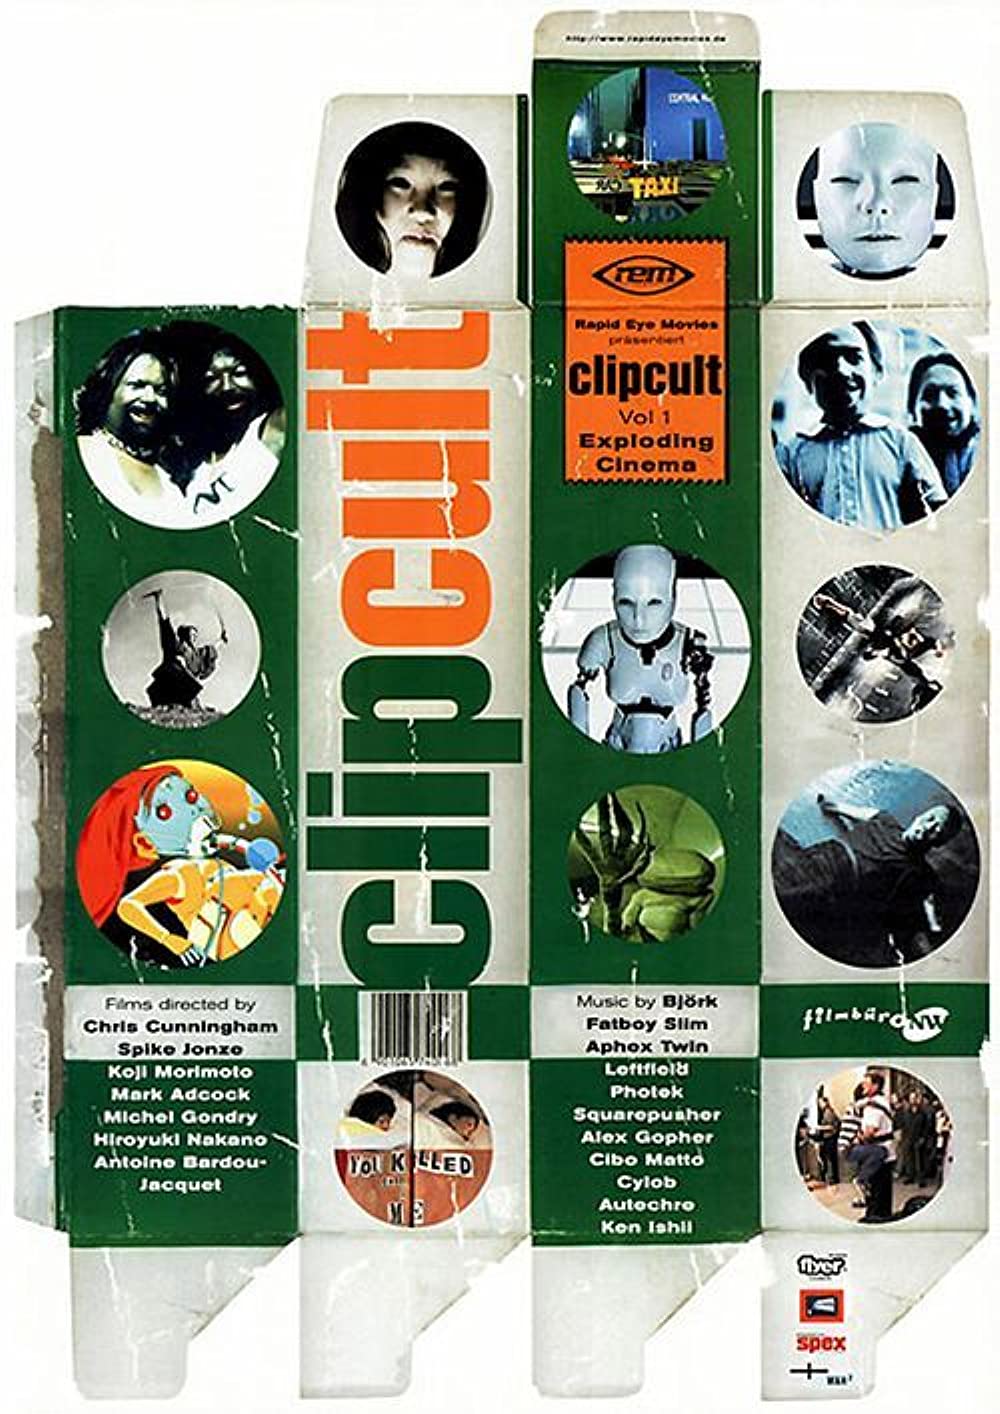 Clip Cult VOL. 1 - Exploding Cinema